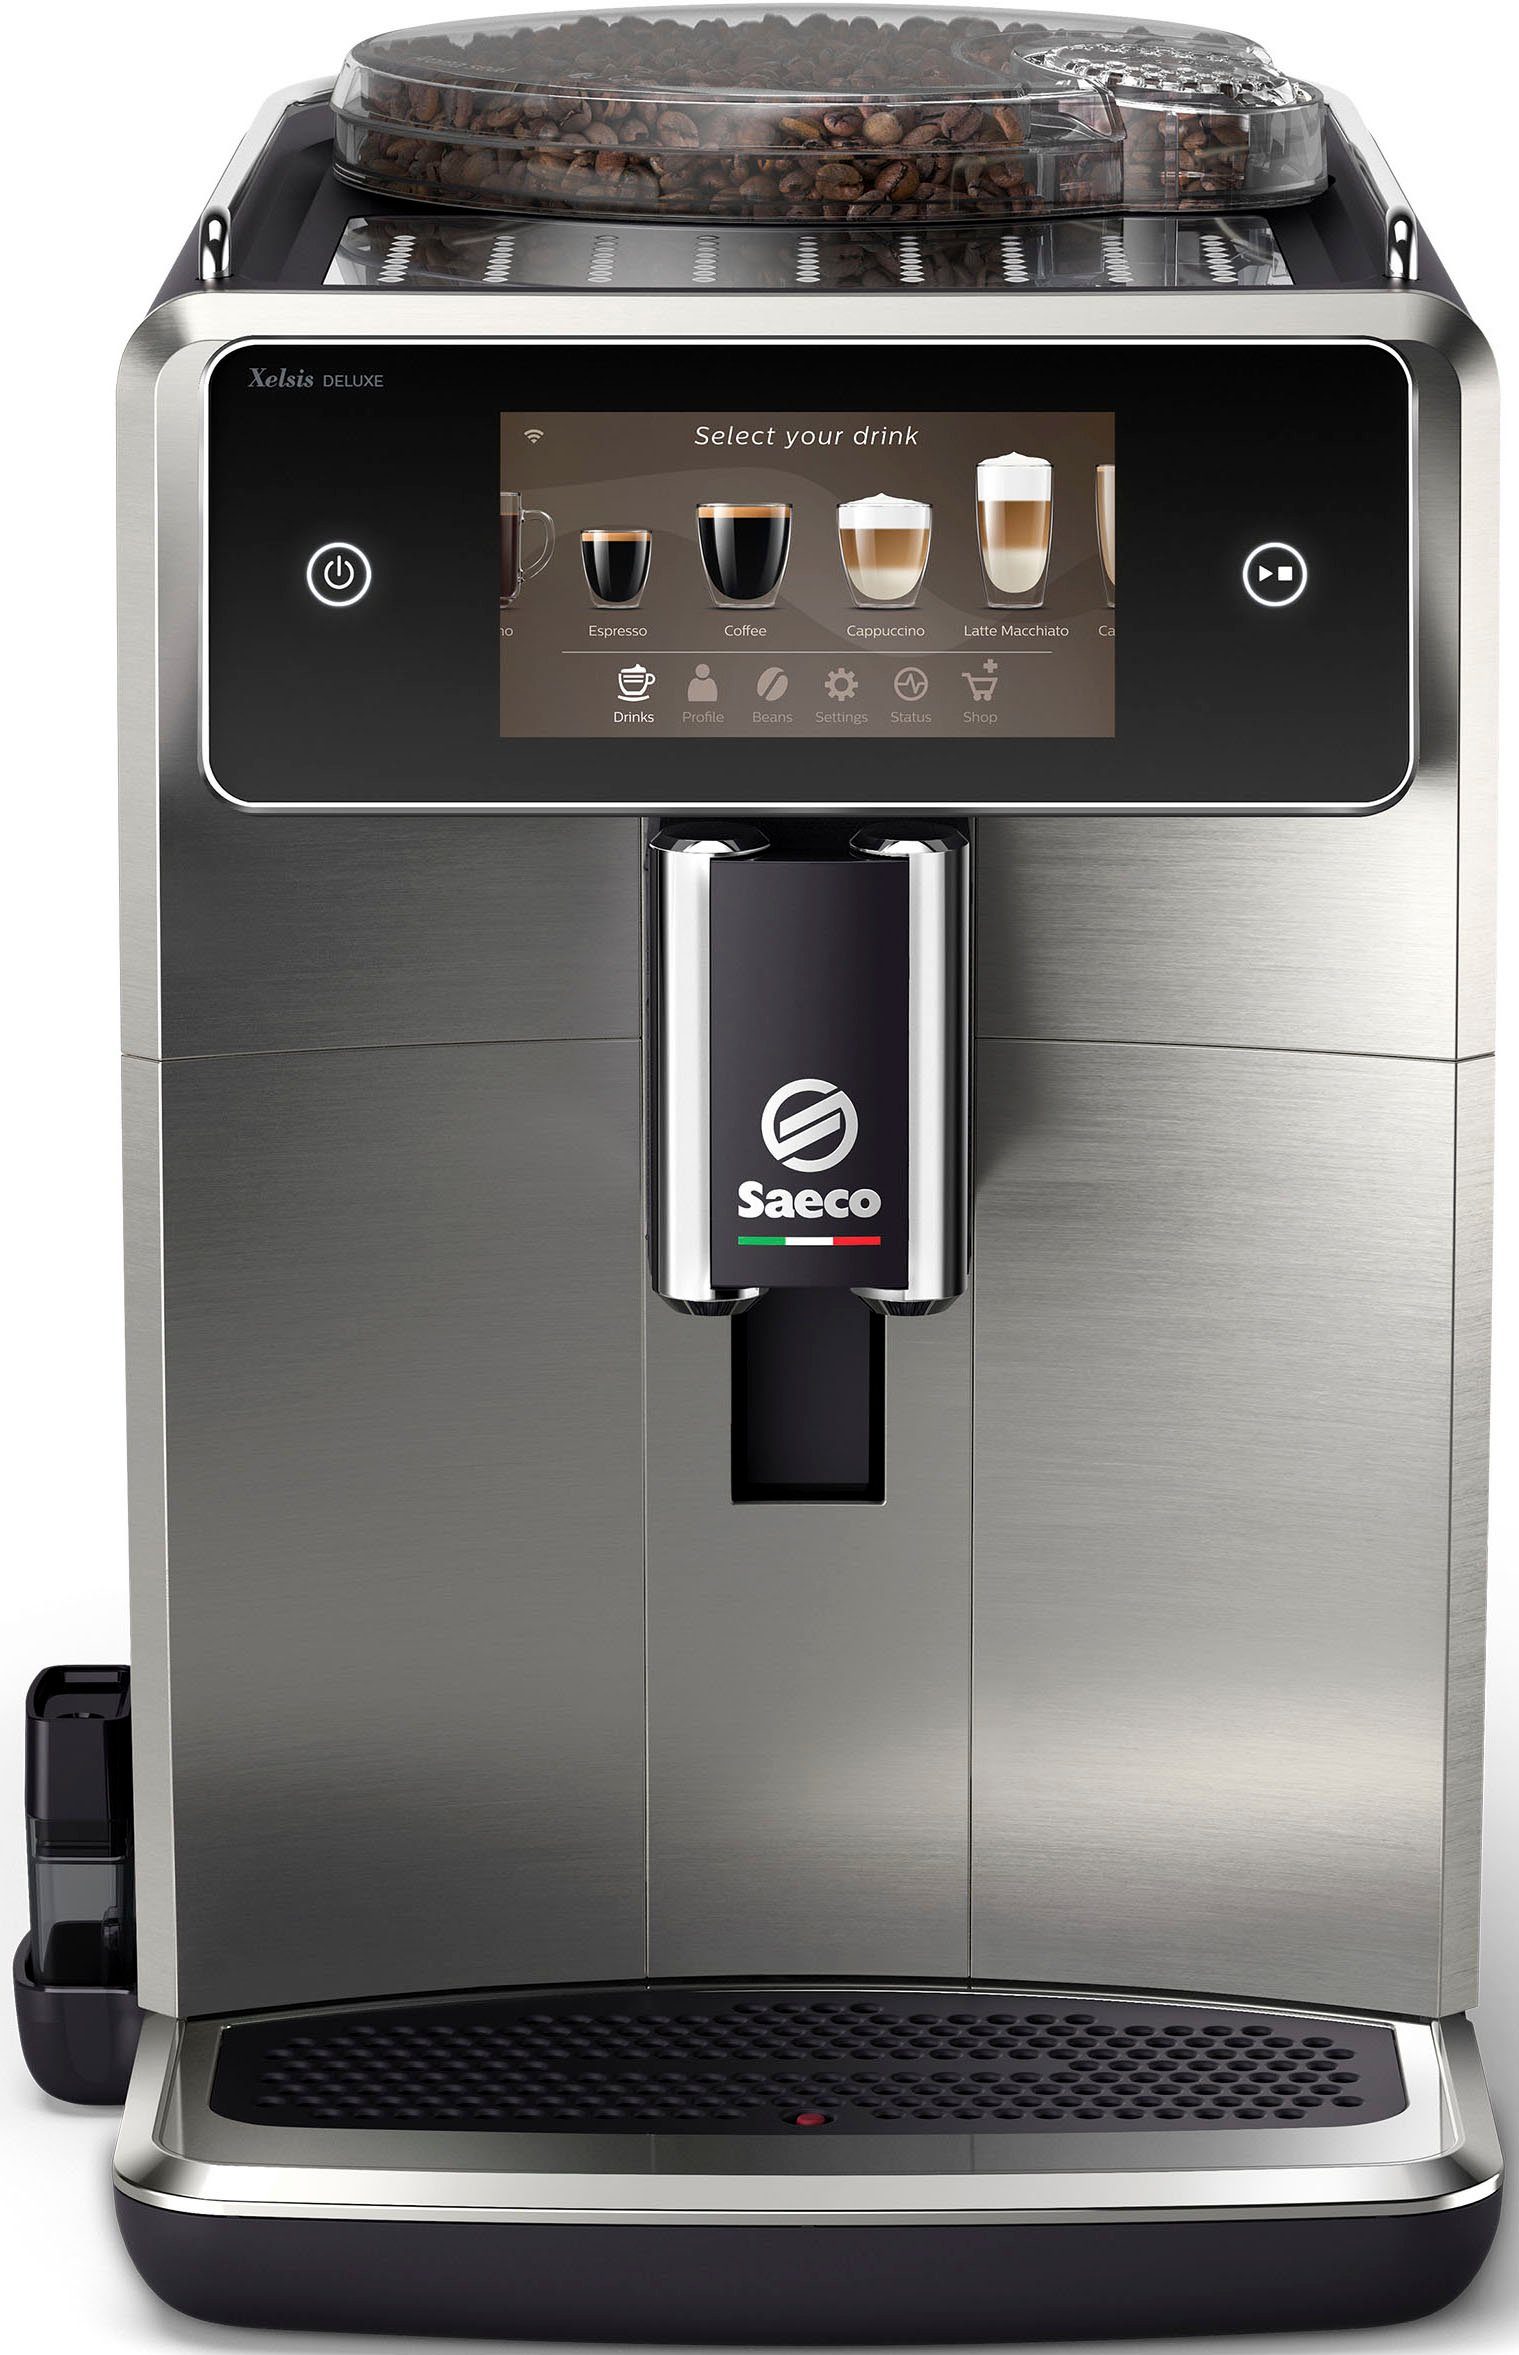 Xelsis 5" Benutzerprofilen mit 22 für SM8785/00, Touchscreen Deluxe 8 Saeco Kaffeevollautomat und Kaffeespezialitäten,